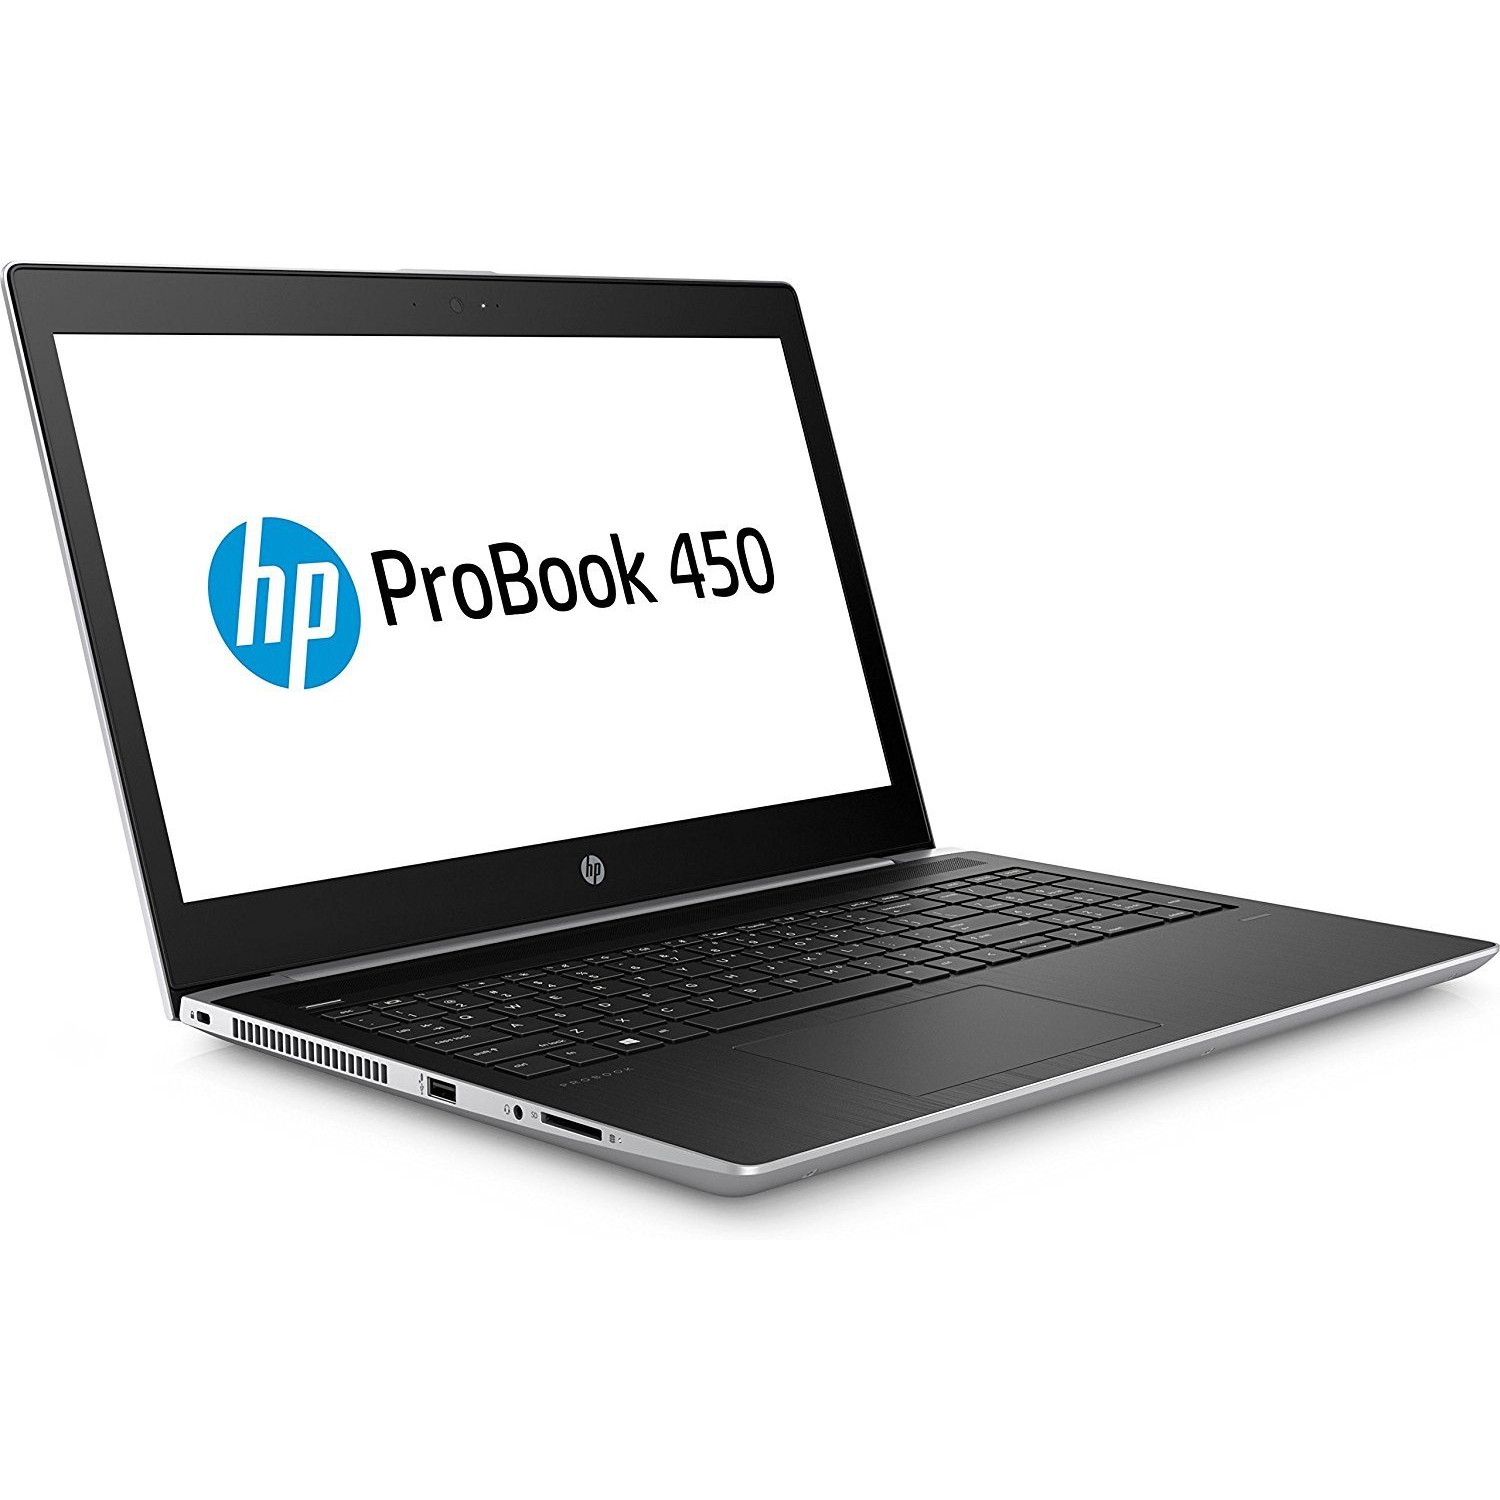 Refurbished (Good) - HP ProBook 450 G4, 15.6" Full HD Screen, Intel Core i5-7200U, 16GB DDR4 RAM, 512GB SSD, Windows 11 Pro, Silver